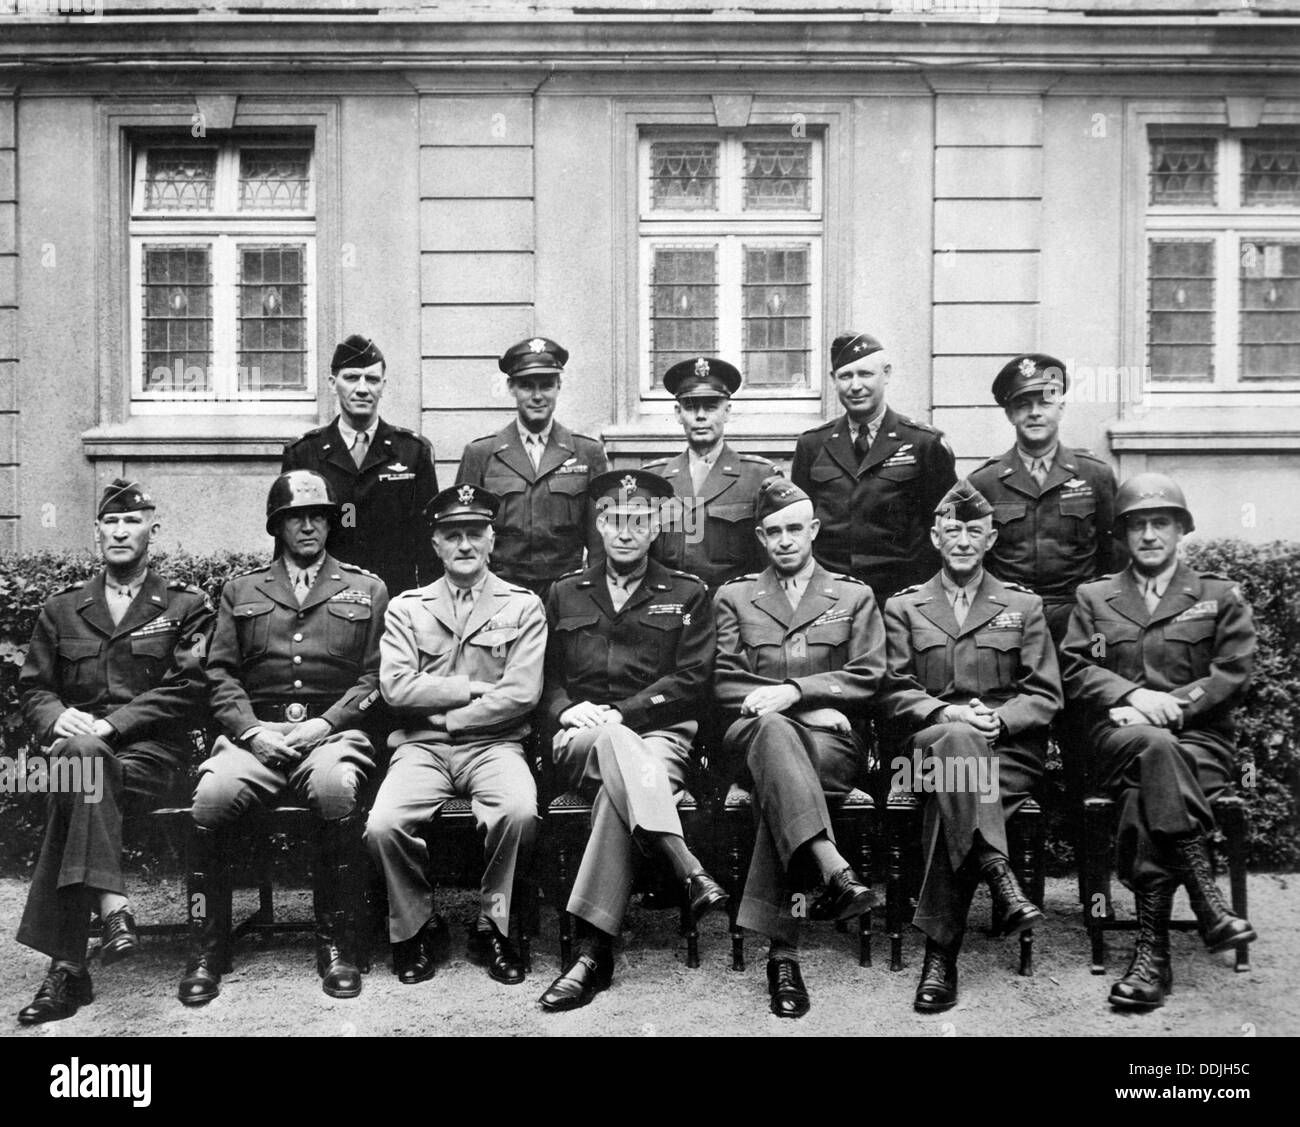 AMERIKANISCHEN WW2 Kommandanten im Jahr 1945 mit Eisenhower sitzen Zentrum. Für andere Bezeichnungen siehe Beschreibung unten Stockfoto